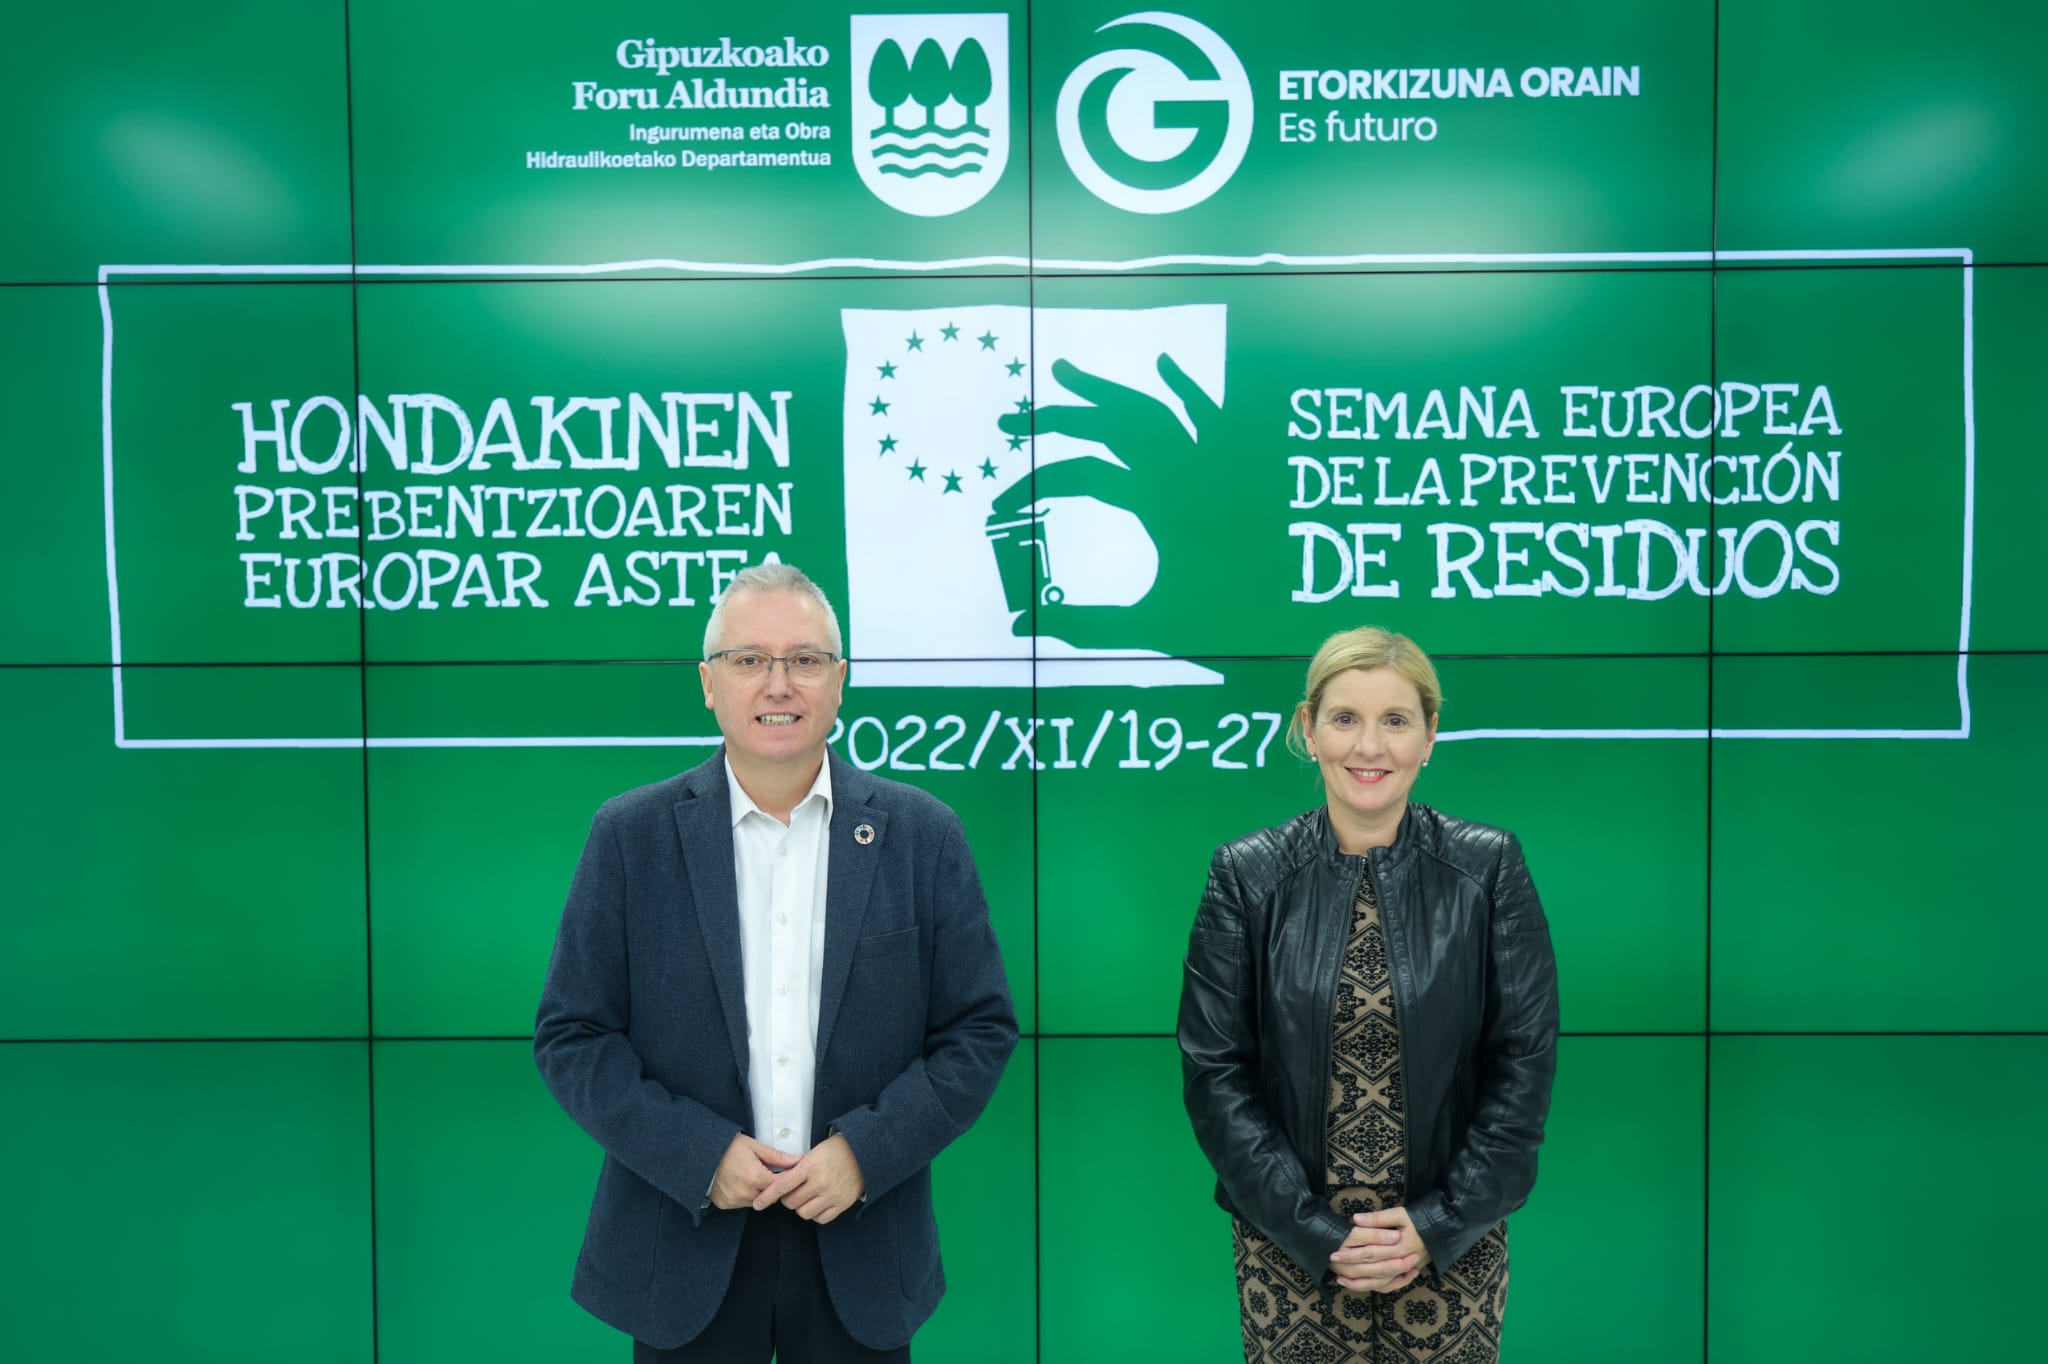 Gipuzkoa impulsa la transformación del residuo en recurso, una oportunidad para el desarrollo de la industria del reciclaje y la reutilización de...